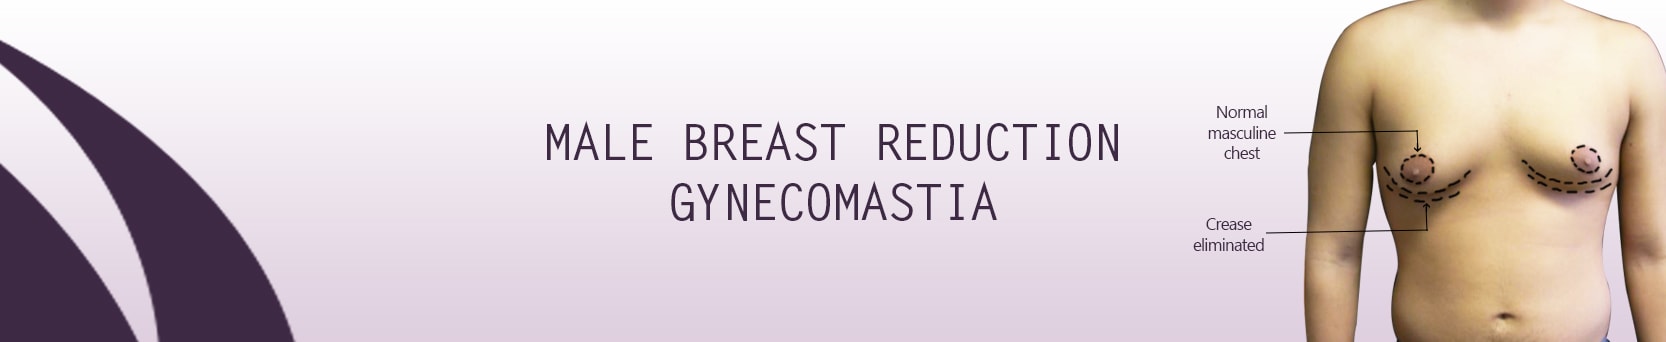 gynecomastia_surgery